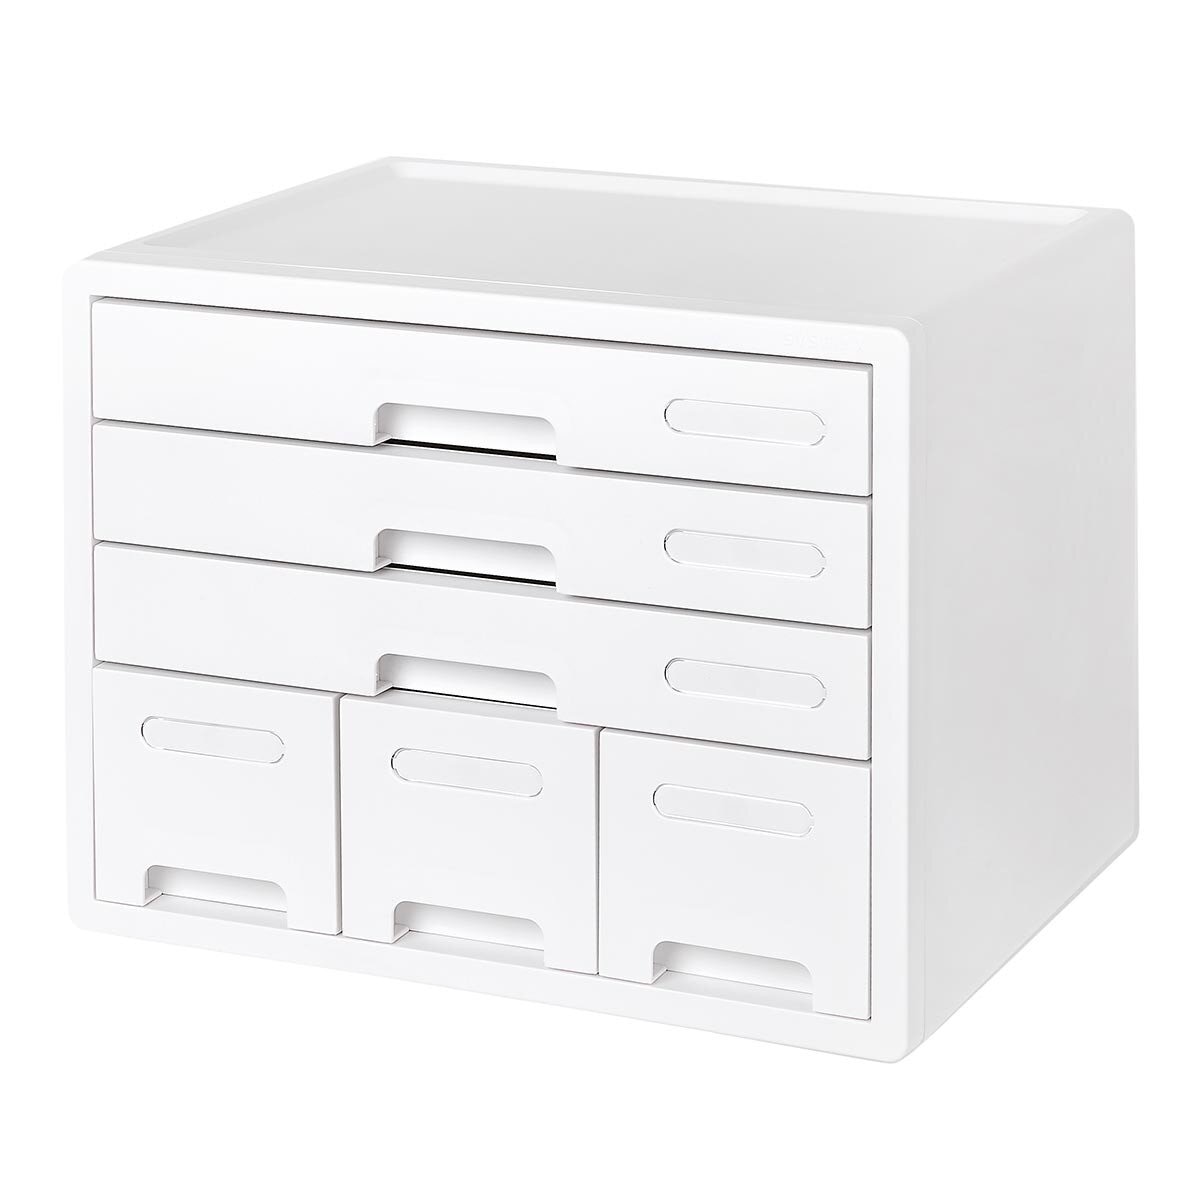 Sysmax 桌上型 4 層資料置物櫃 白色